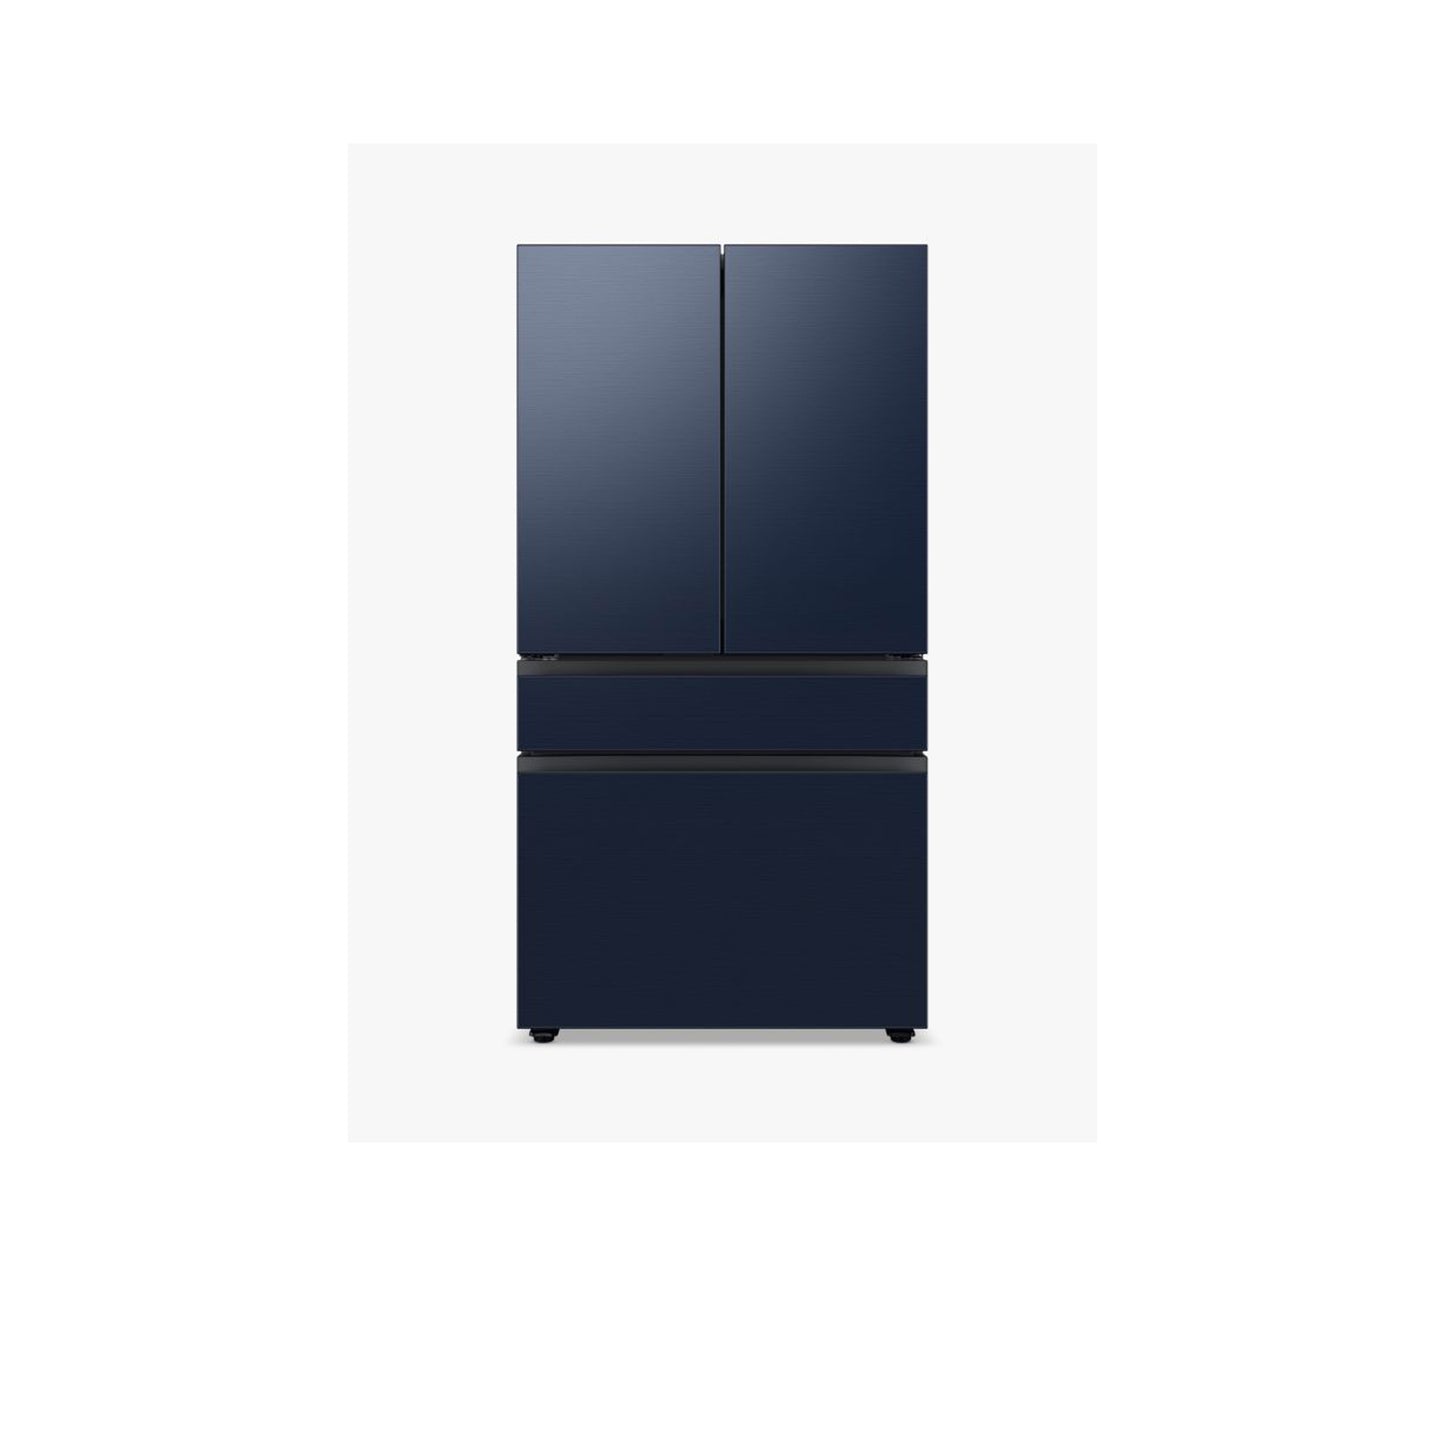 ثلاجة بباب فرنسي بأربعة أبواب مخصصة (29 قدمًا مكعبًا) مع ألواح علوية من الزجاج باللون الأزرق الصباحي وألواح وسطى وسفلية من الزجاج الأبيض. 